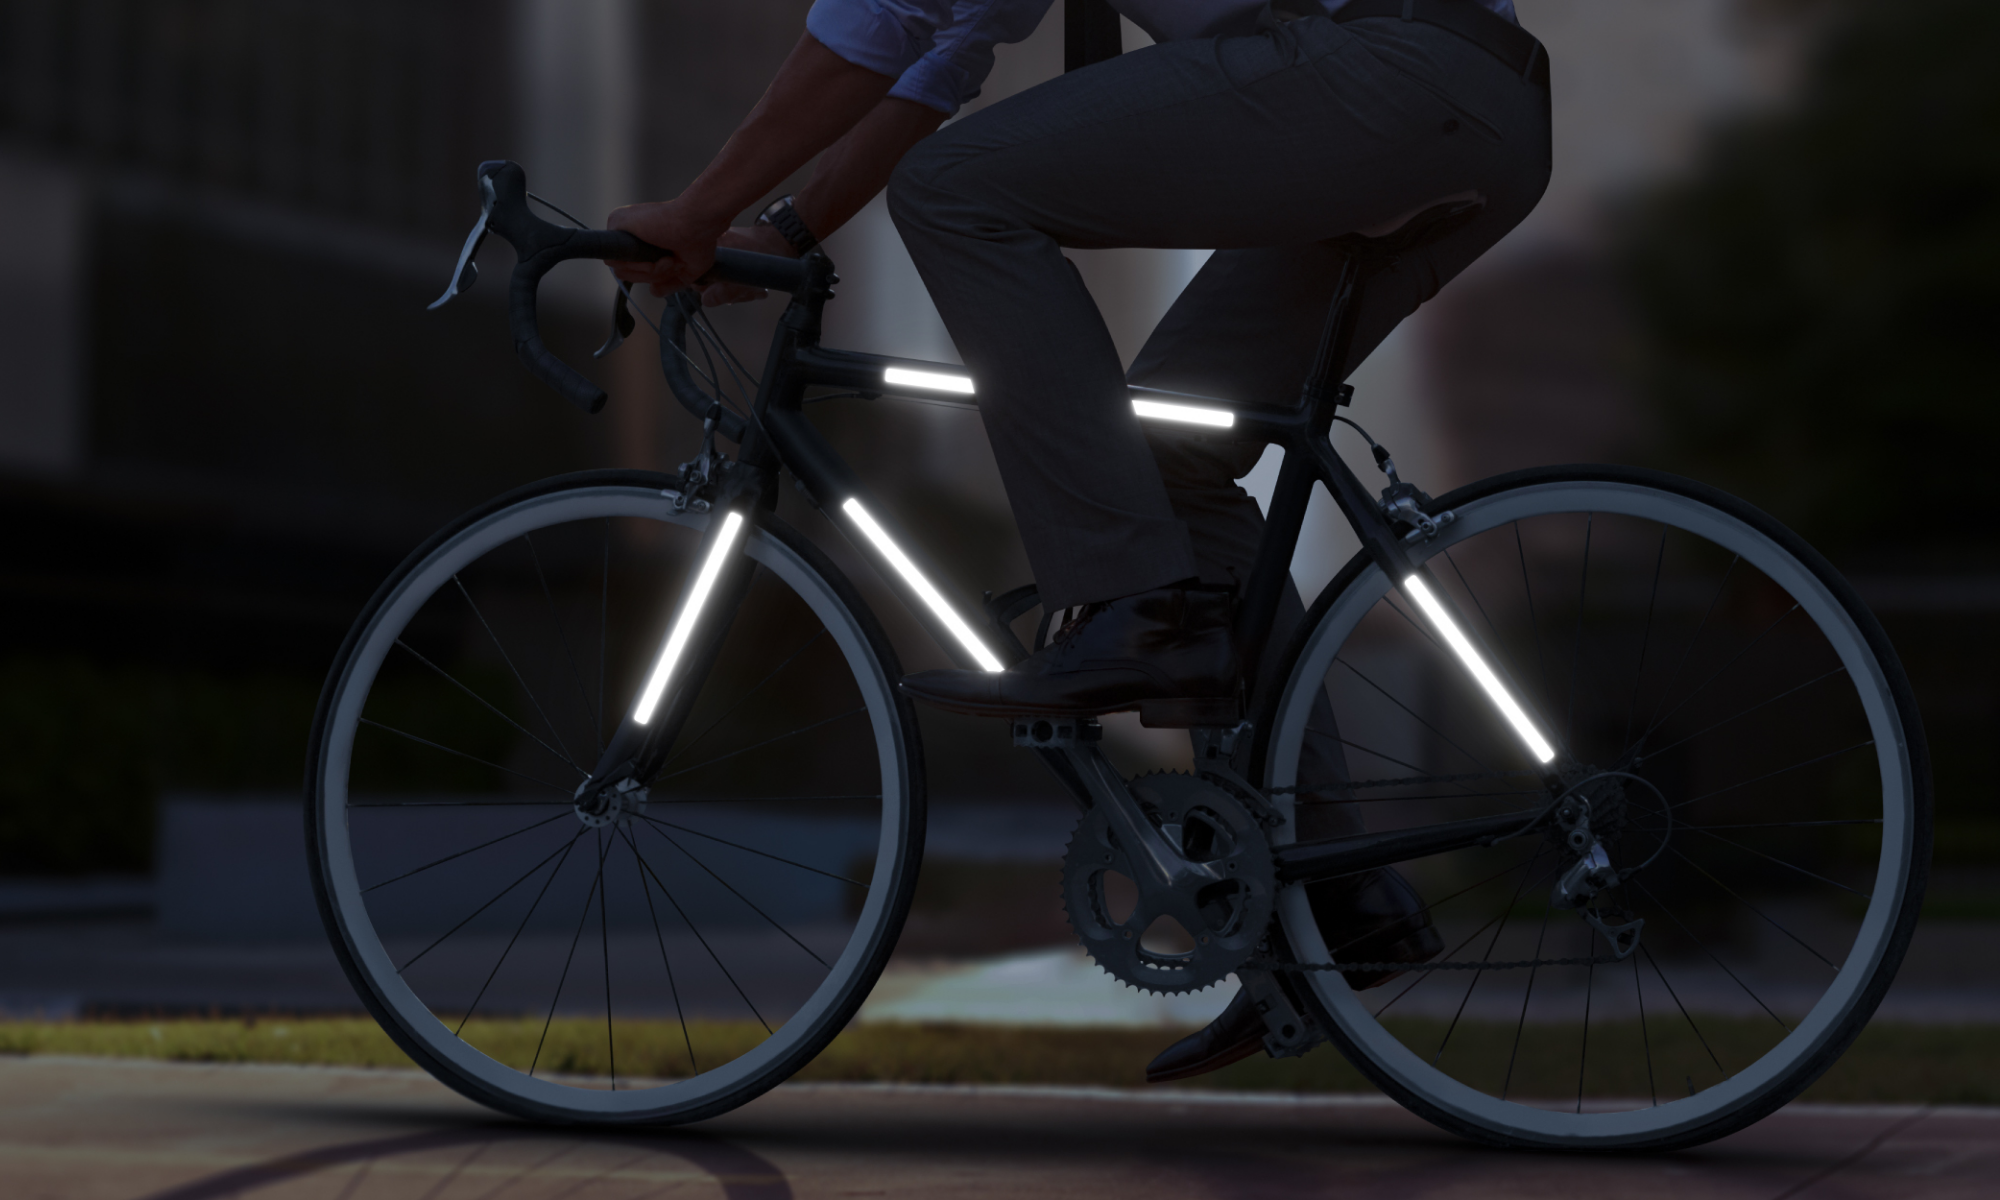 Autocollants Fluorescents Réfléchissants Pour Vélo, Bandes De